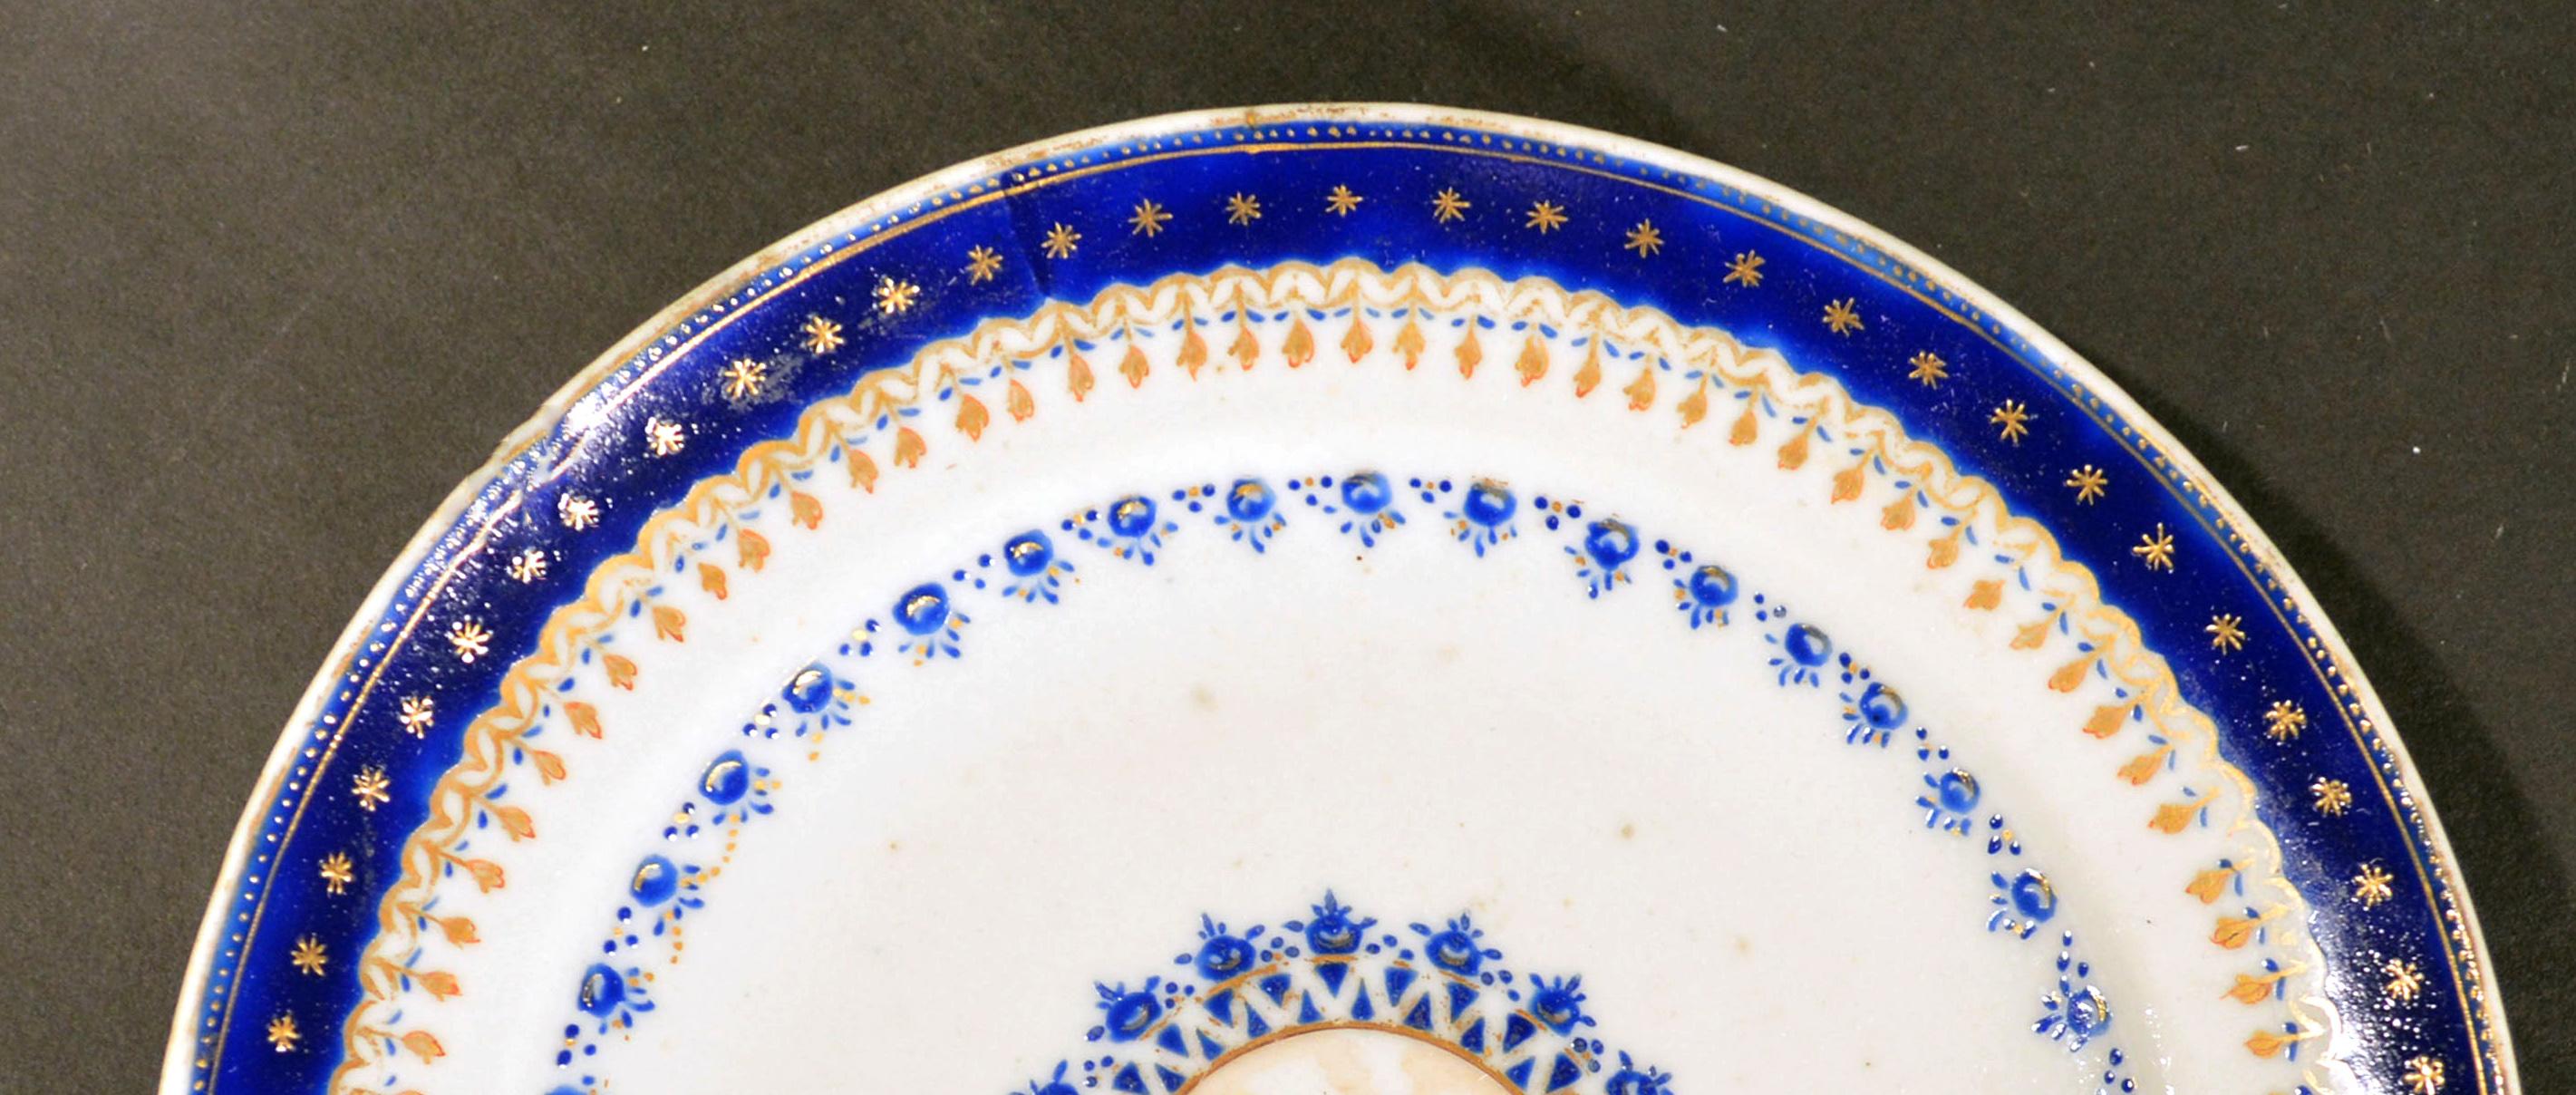 Chinesische Export Porzellan blau Emaille Teller für den amerikanischen Markt gemacht, 
um 1785.

Der kleine chinesische Exportteller für den amerikanischen Markt hat ein zentrales Rondell in Braun, das eine noch nicht identifizierte Gruppe